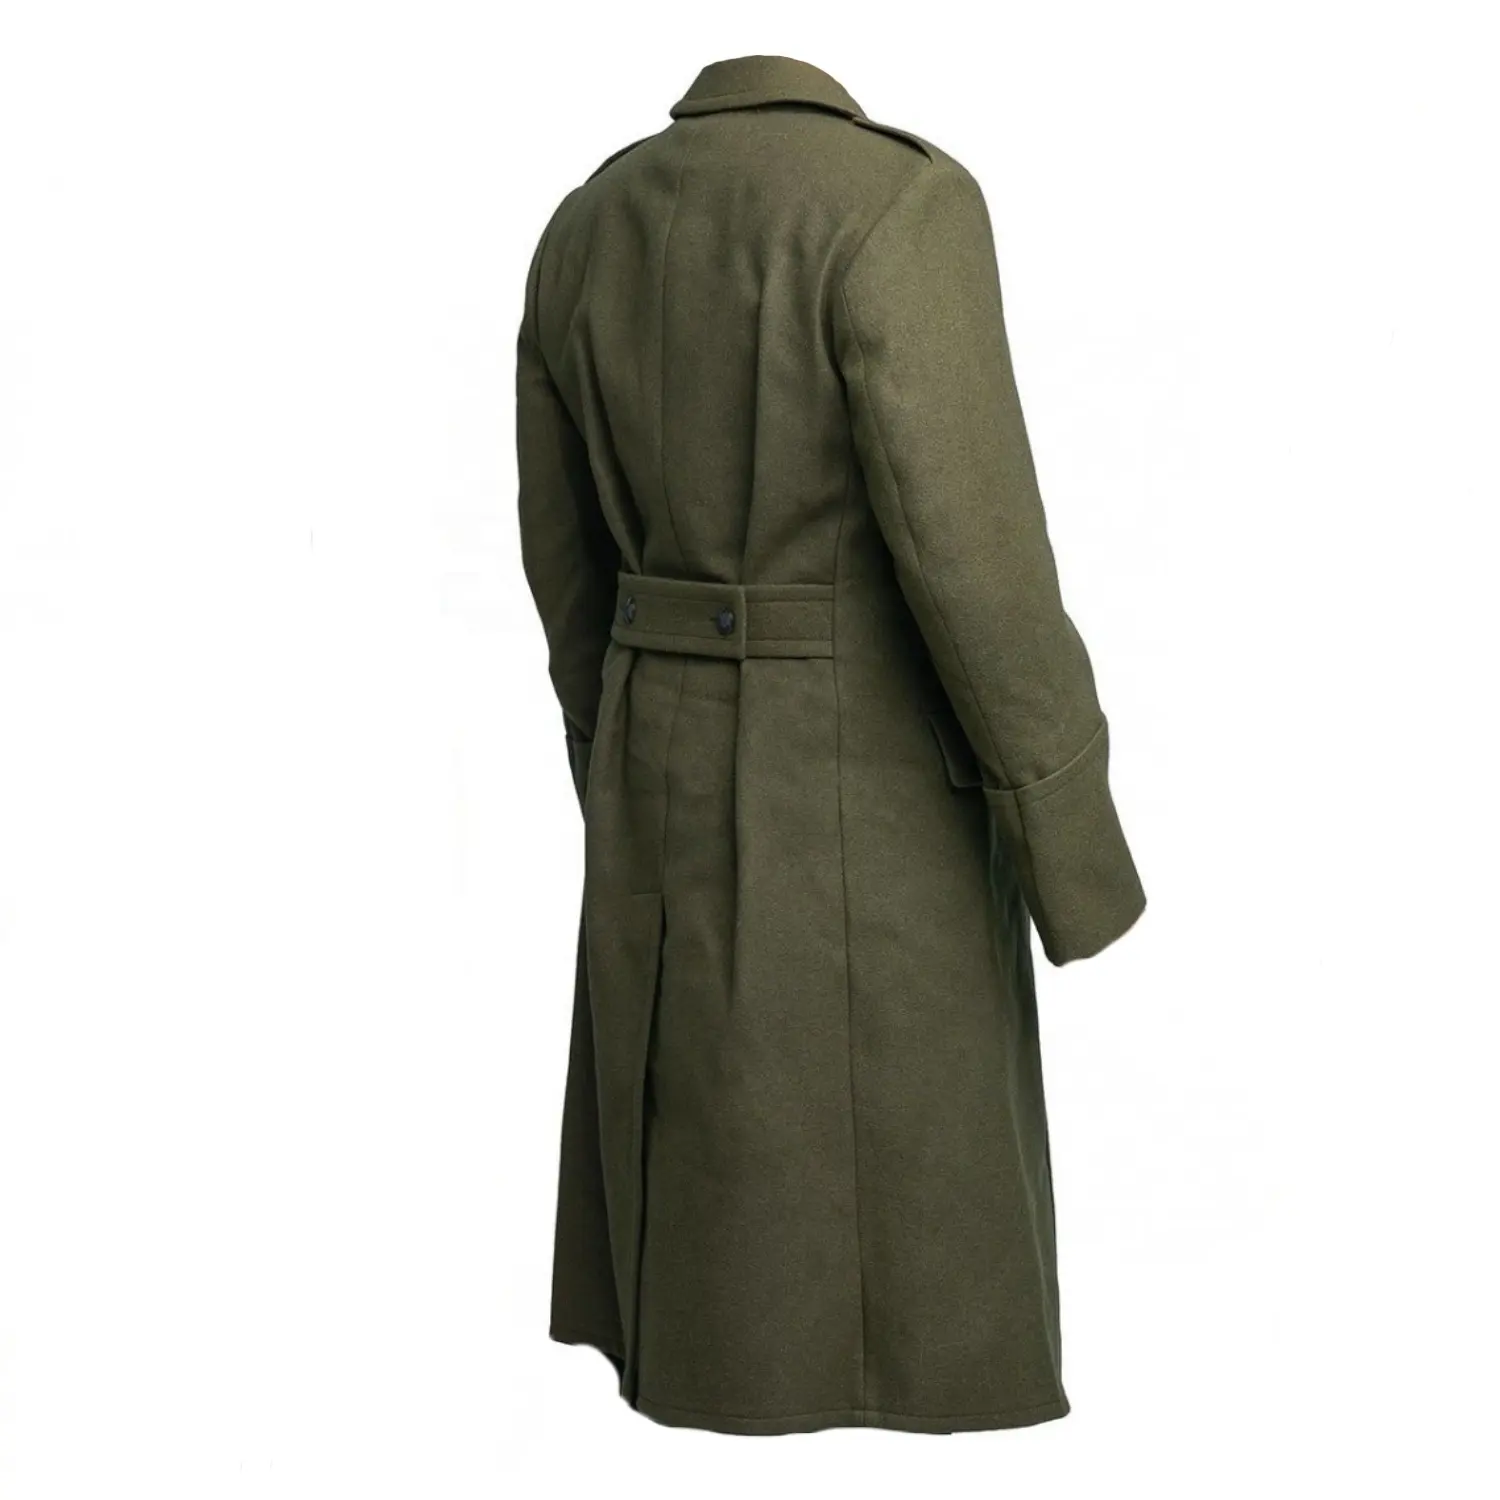 معطف رجالي ممتاز بطول كامل مصنوع من خليط الصوف معطف للشتاء بطية صدر مزدوجة ومطرز ومطرز معطف الضابط الأخضر